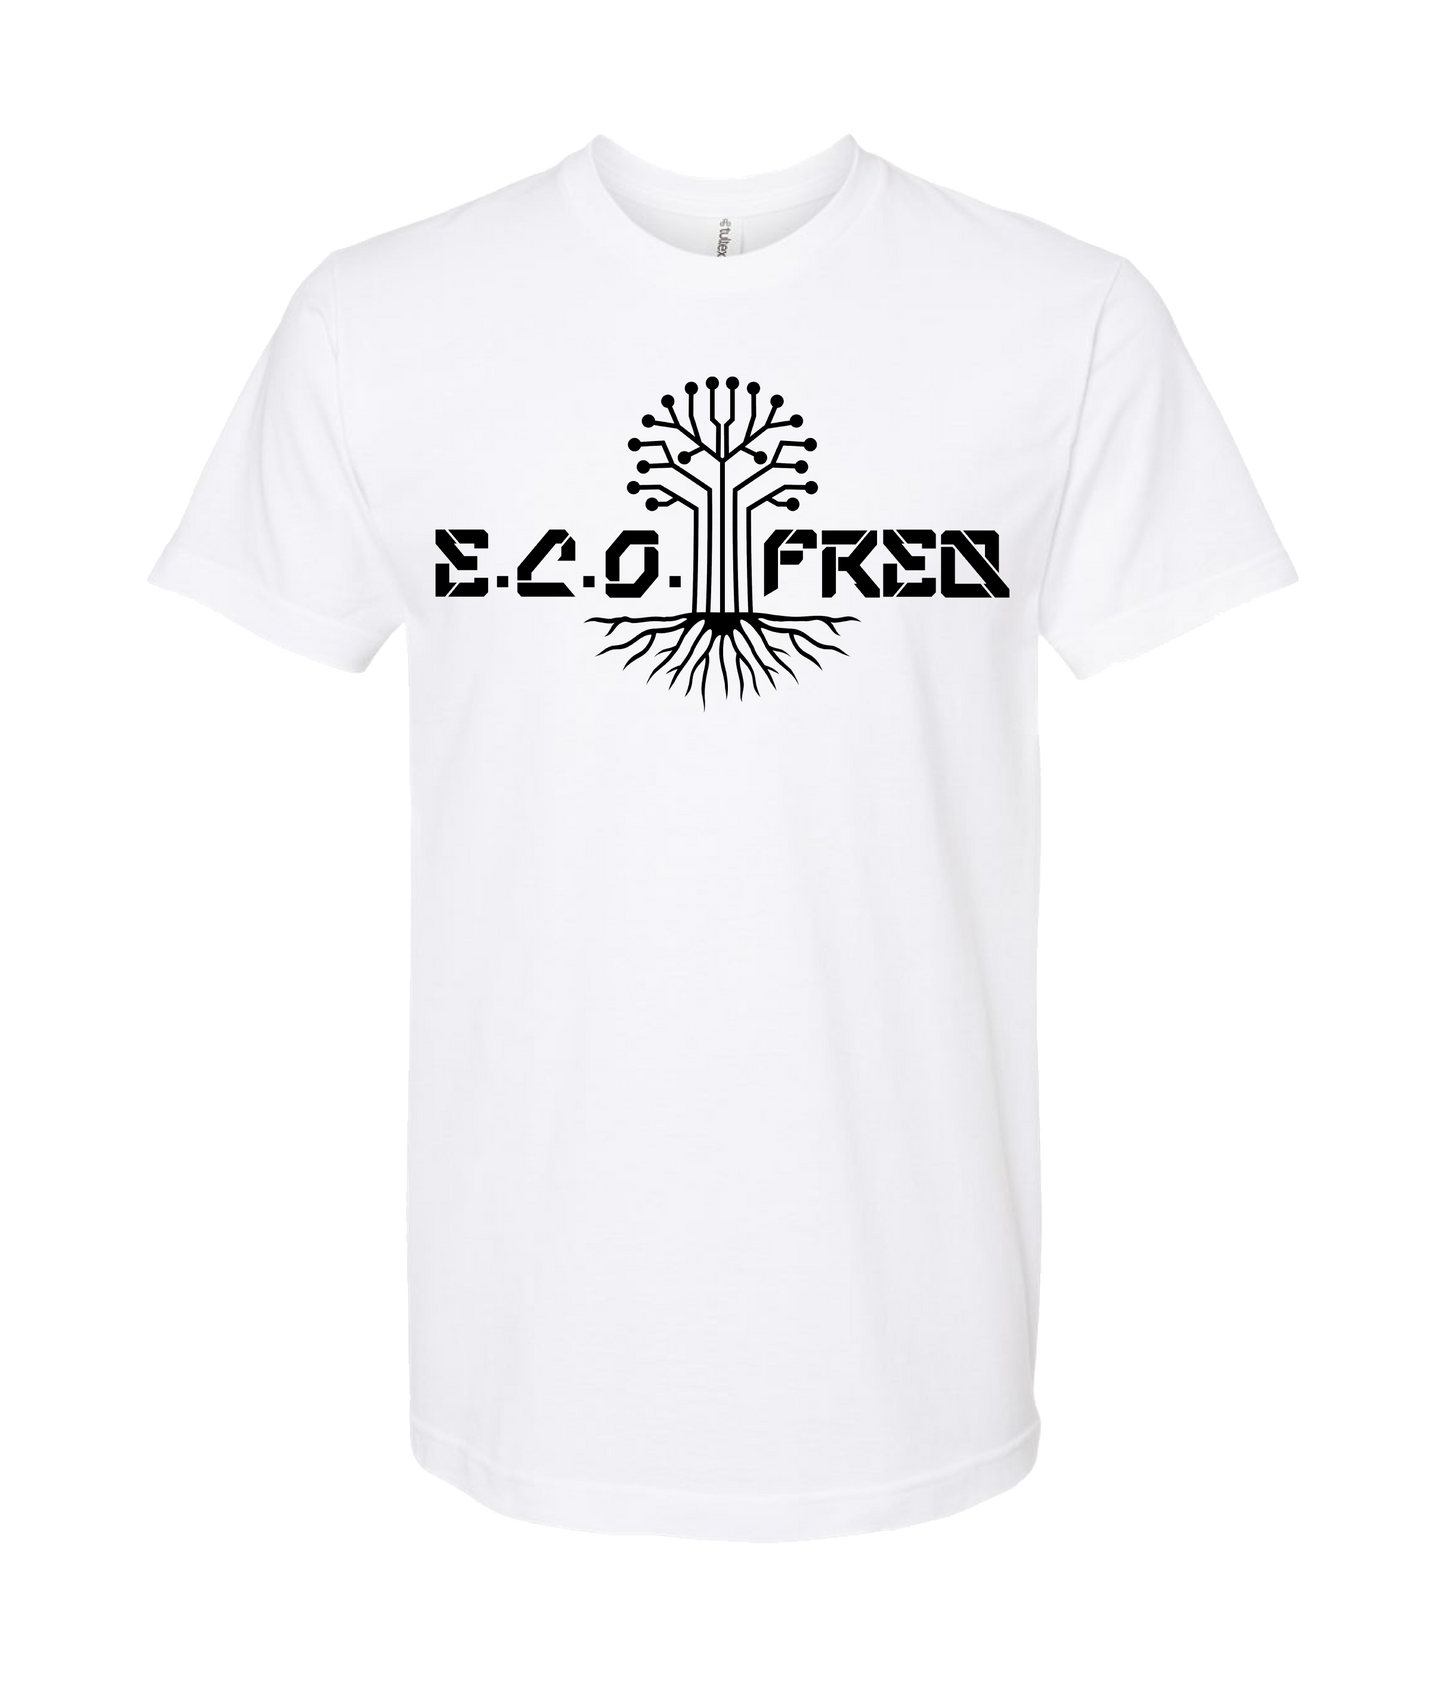 E.C.O.Freq - E.C.O TREE - White T Shirt